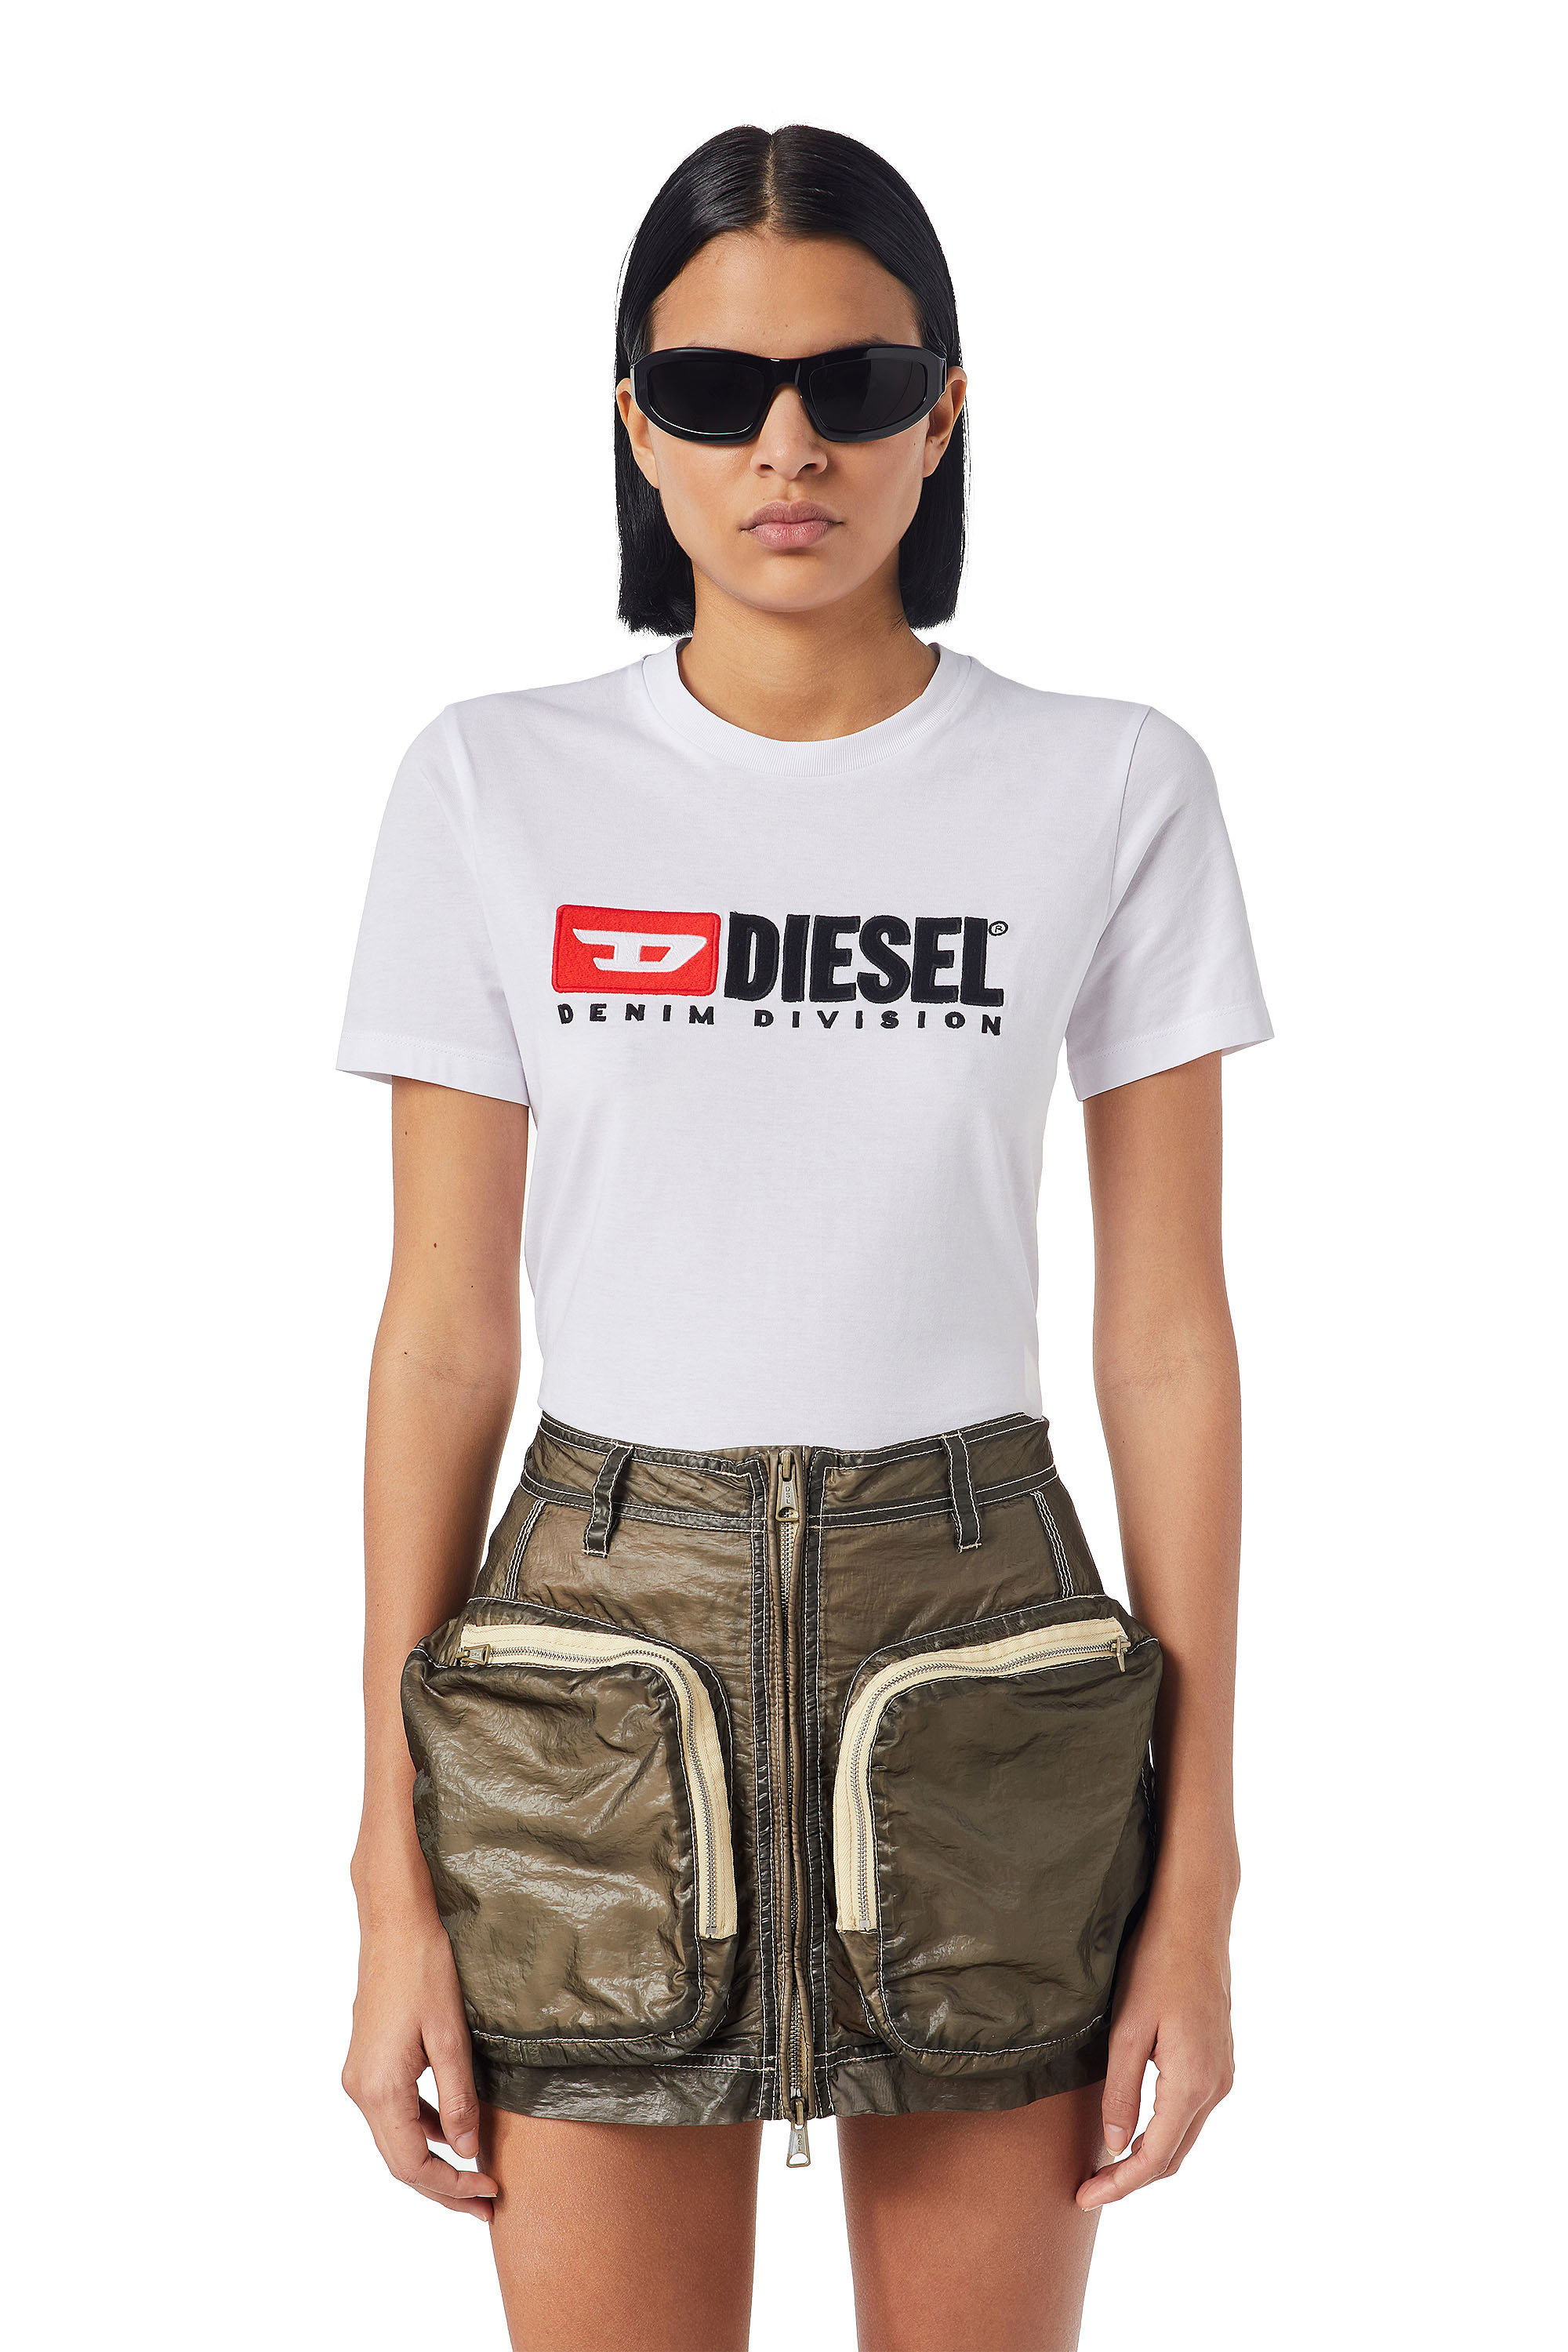 Diesel - T-REG-DIV, White - Image 1